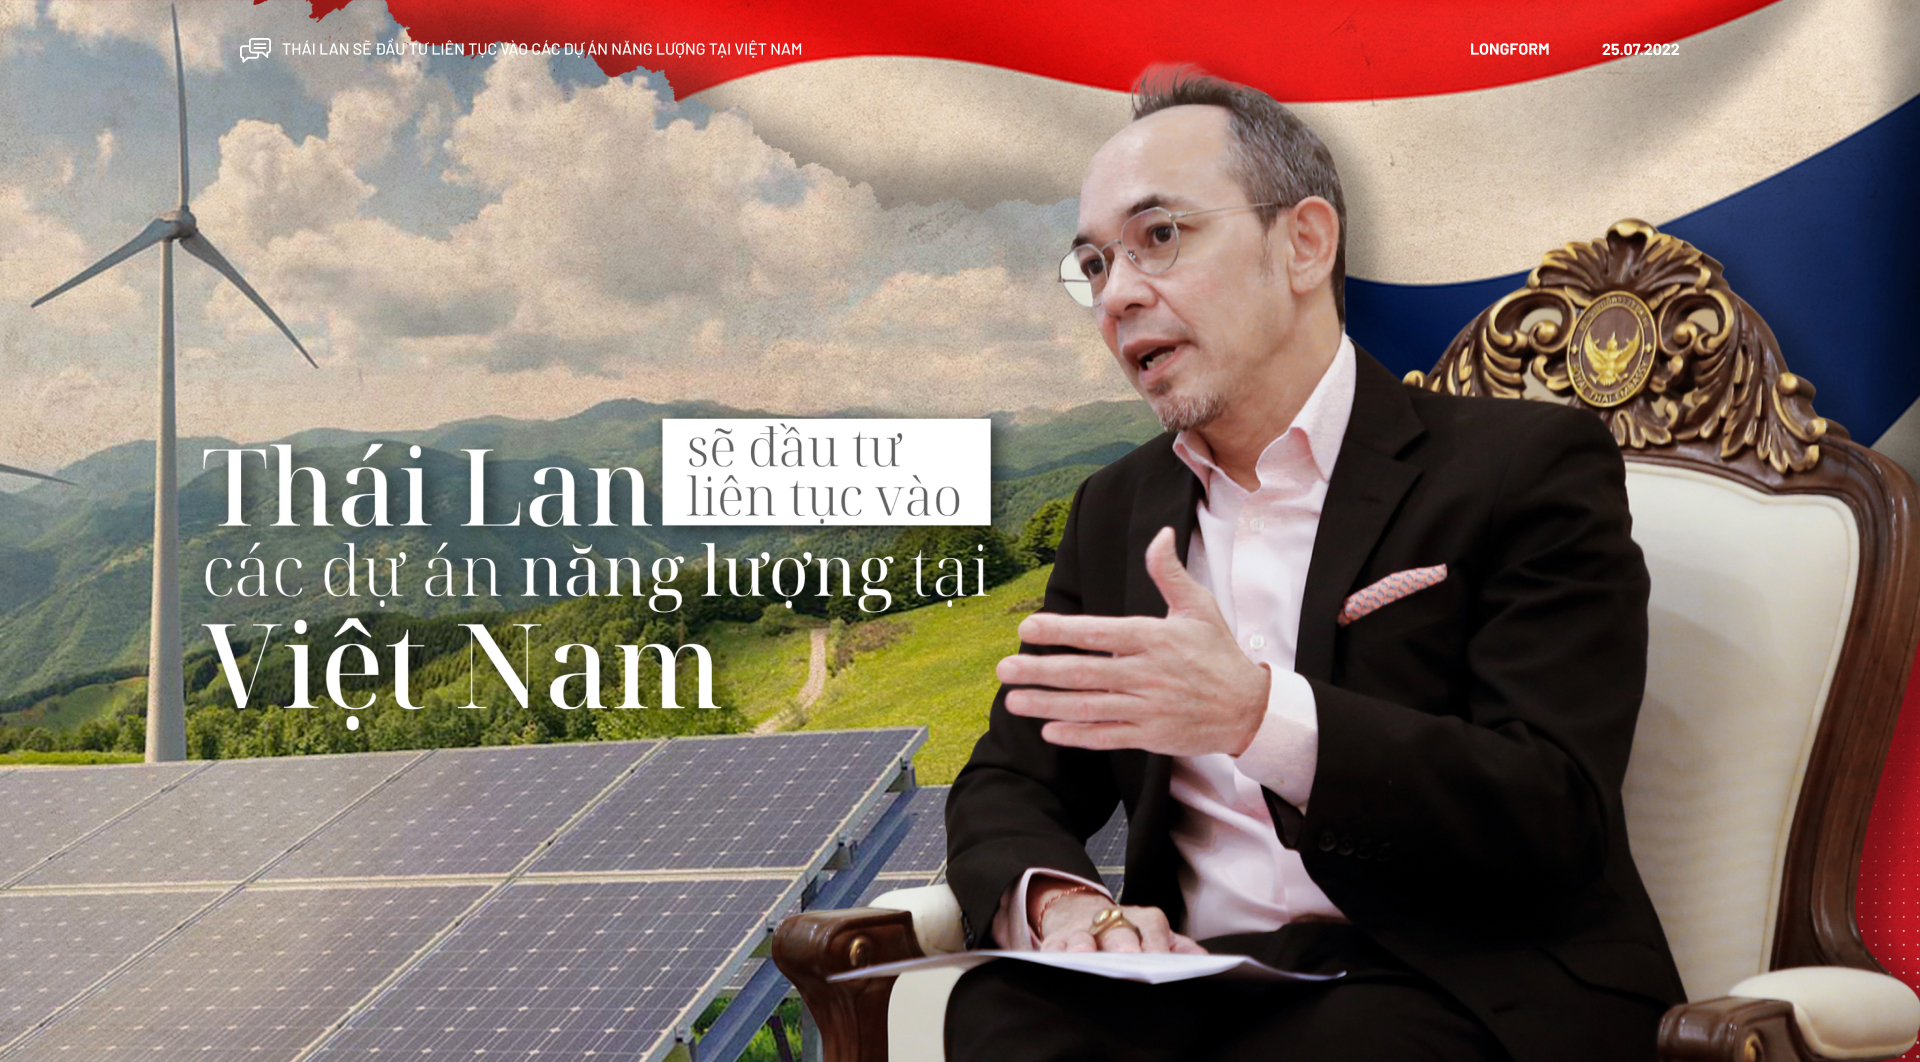 Thái Lan sẽ đầu tư liên tục vào các dự án năng lượng tại Việt Nam